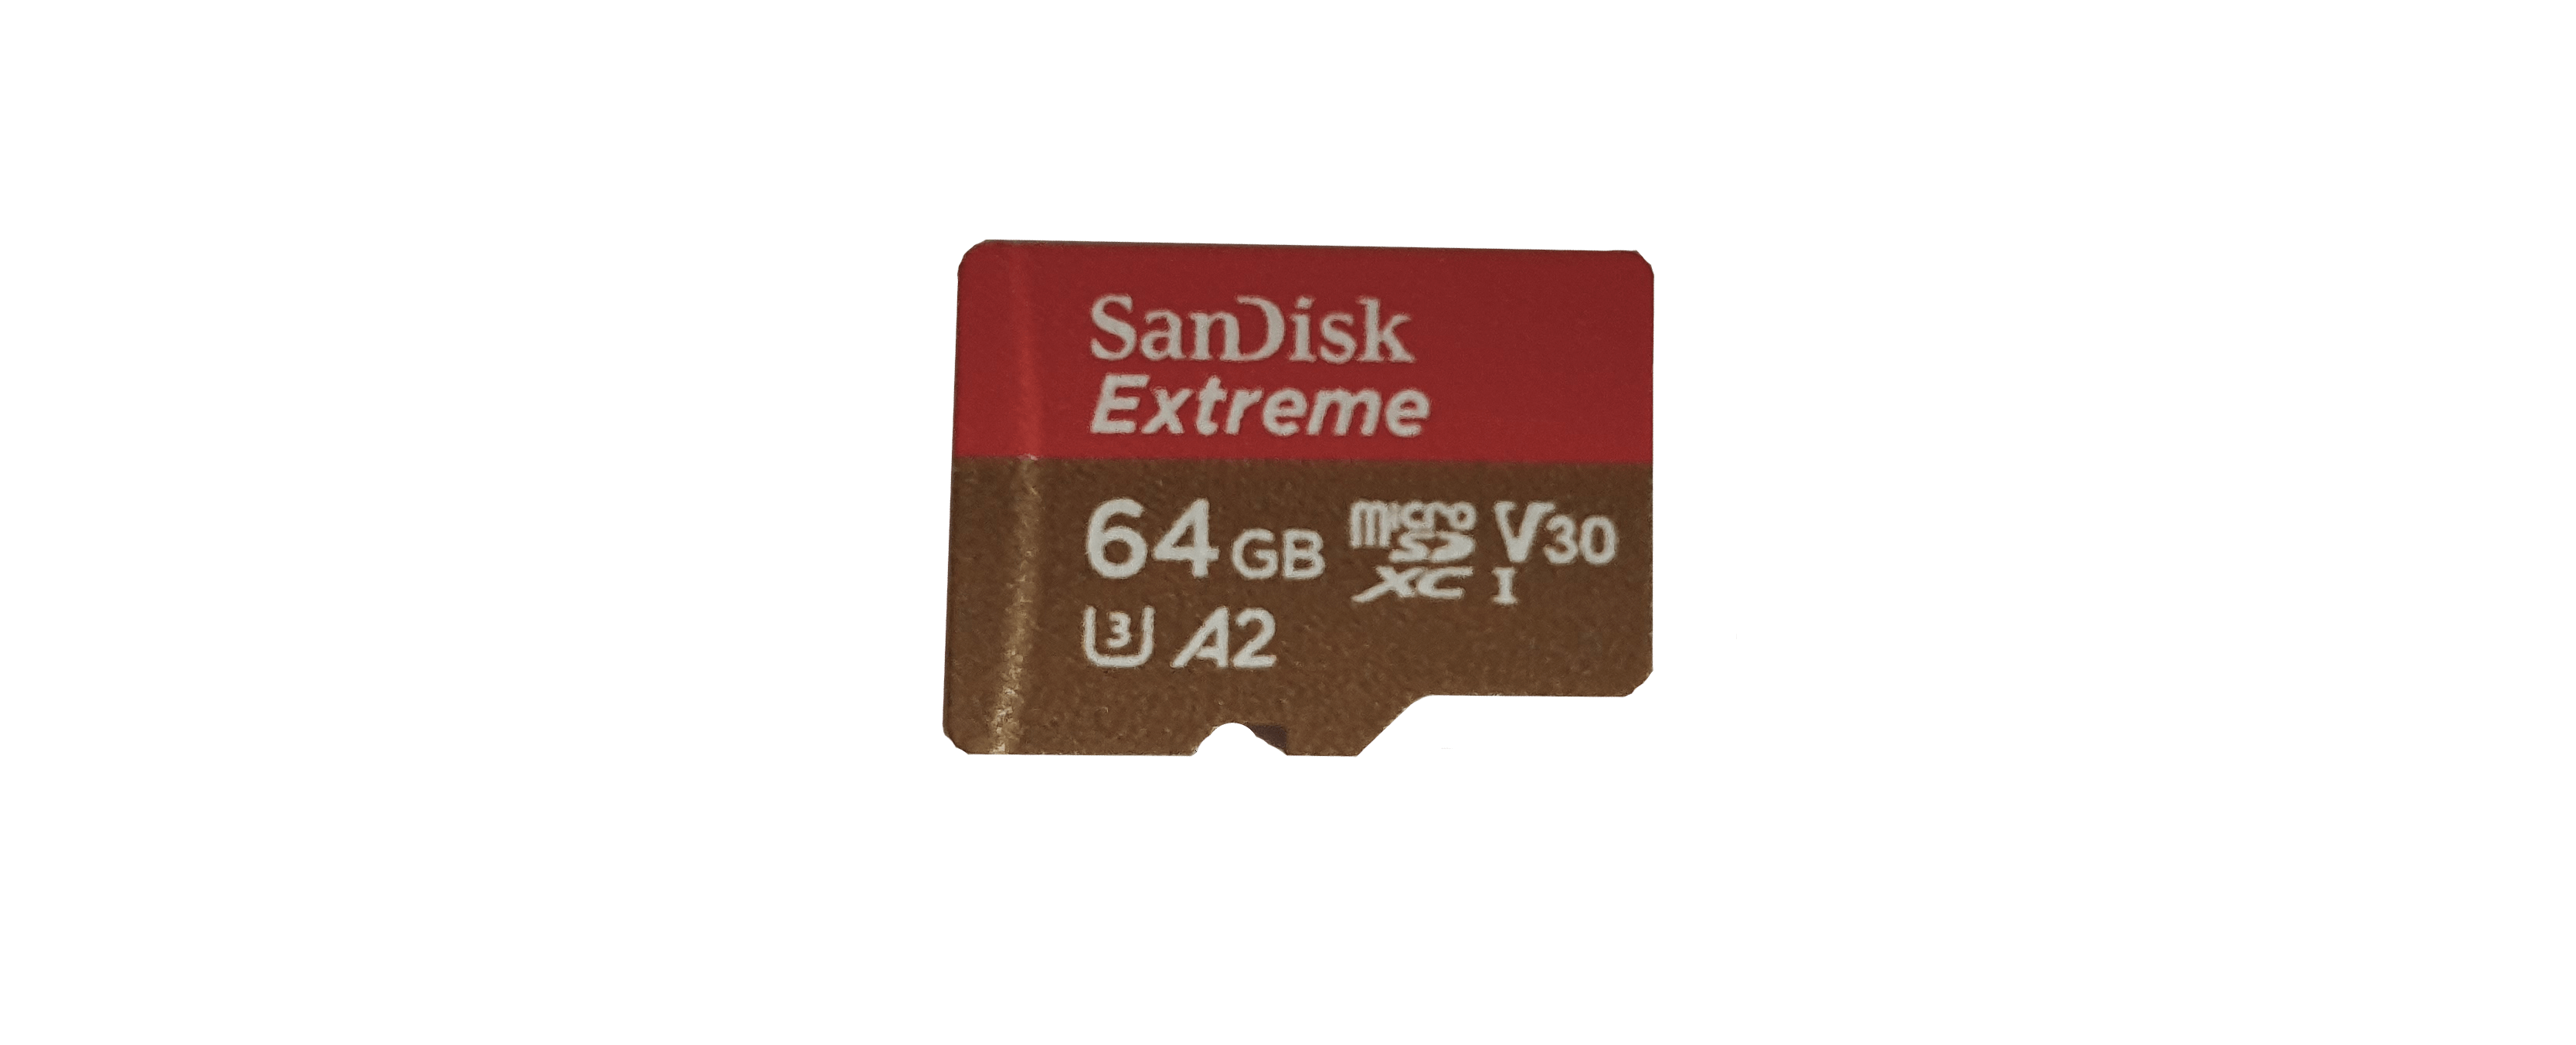 Zur Veranschaulichung, zeigt dieses Bild 64GB - Klasse 10 Mikro SD Karte